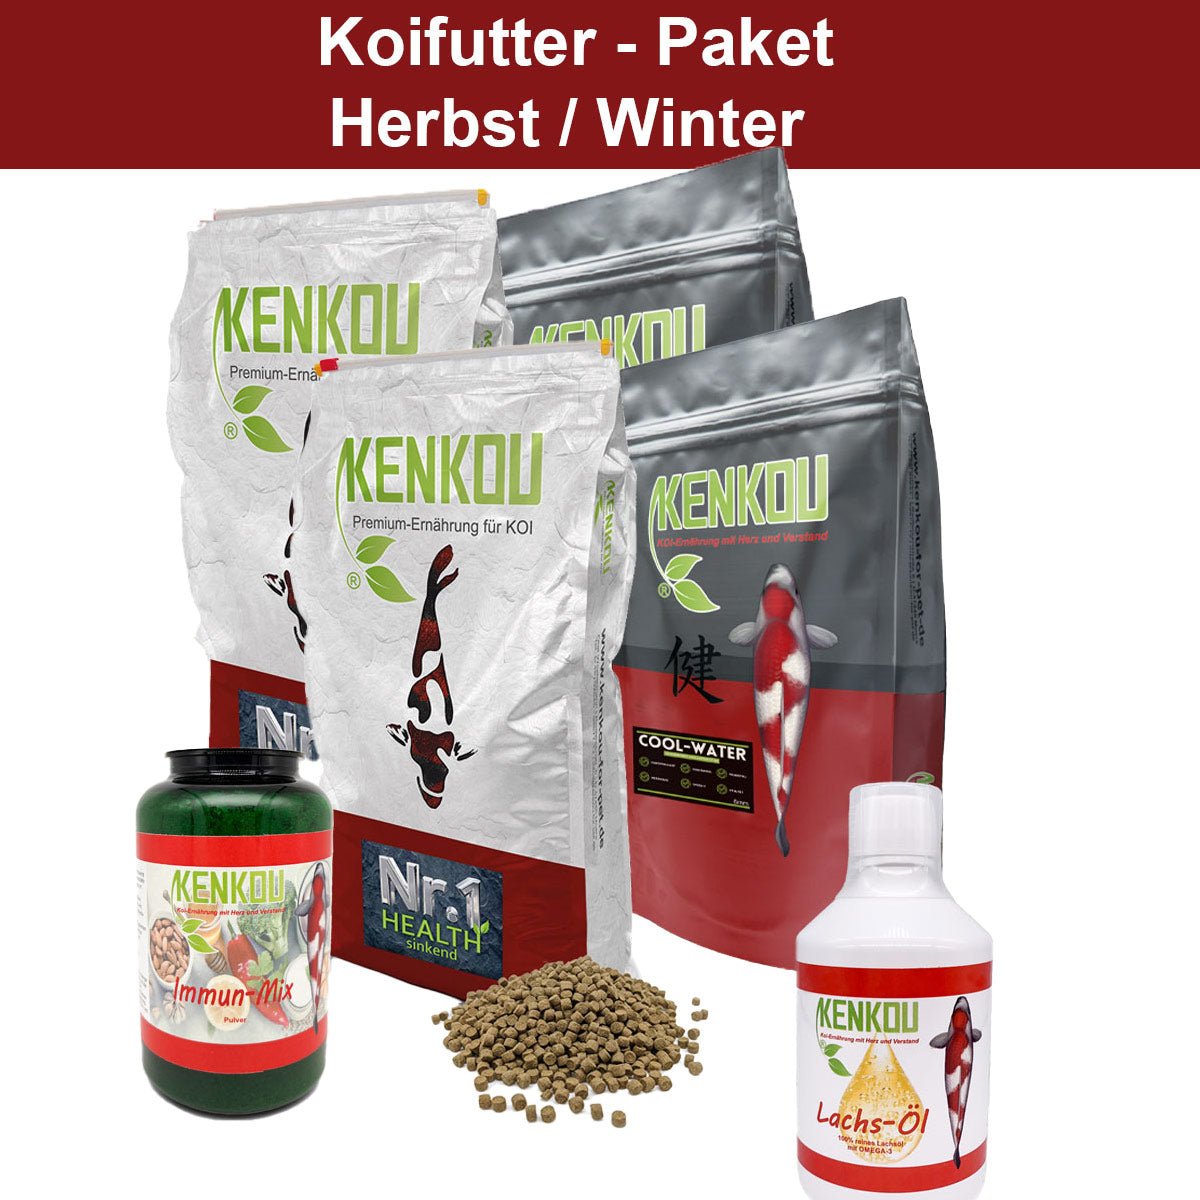 Koifutter-Paket Herbst-Winter - Sparpaket - Niederrhein-Koi